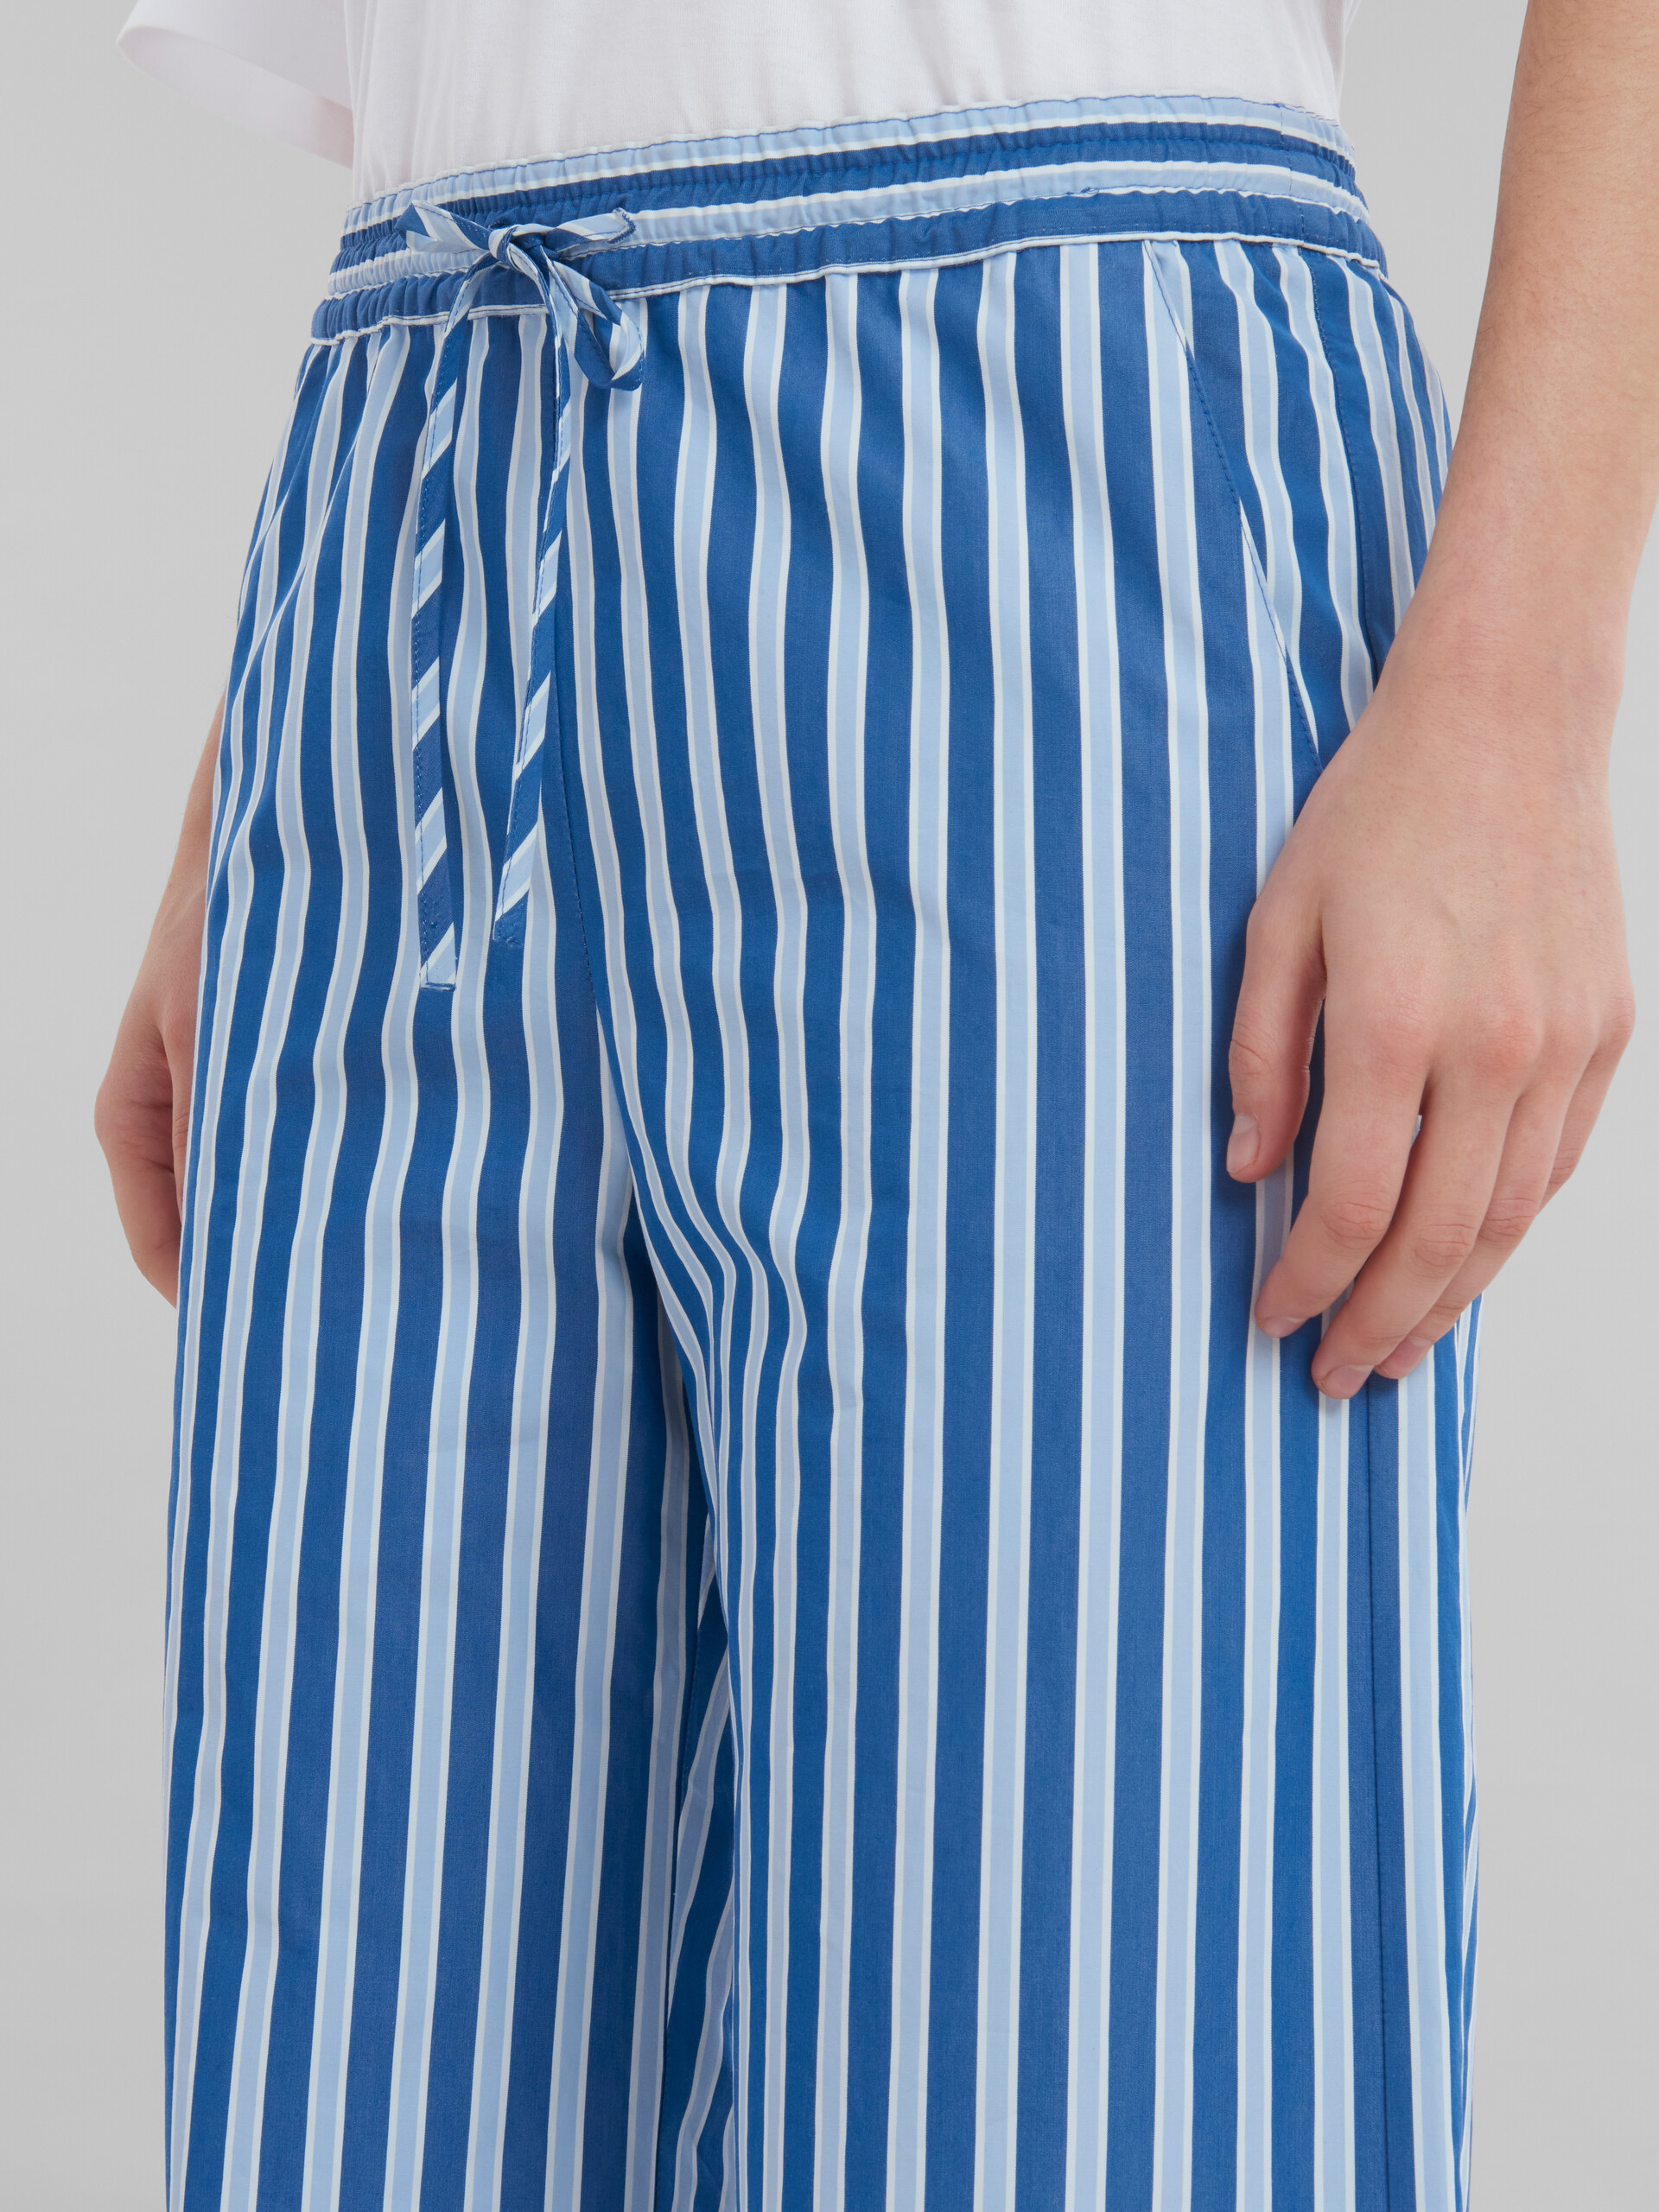 Pantalon de pyjama en popeline biologique bleue et blanche à rayures - Pantalons - Image 4